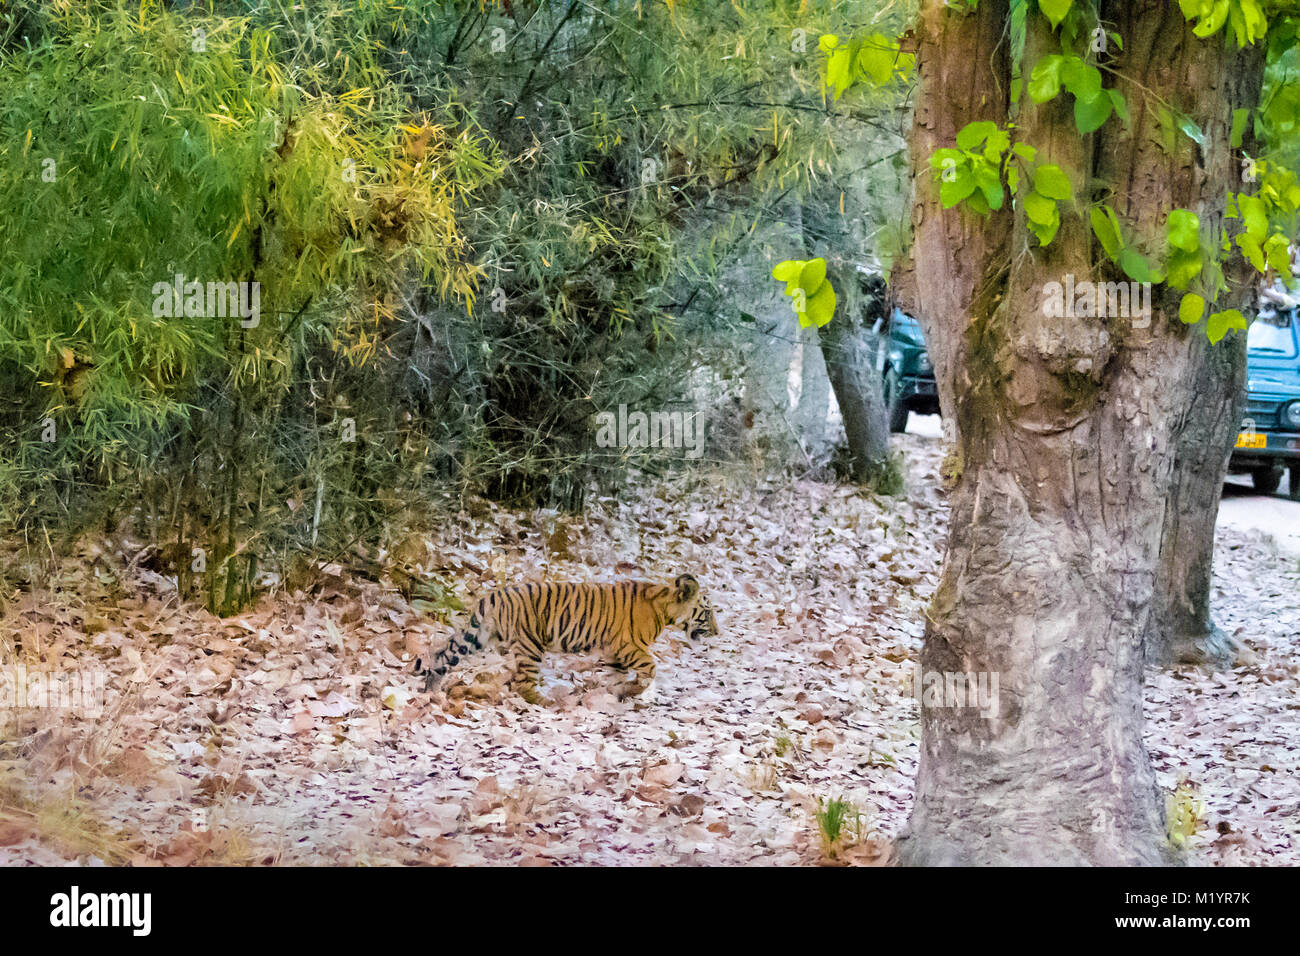 Deux petits mois wild Cub tigre du Bengale, Panthera tigris tigris, la marche vers une route avec des véhicules, la Réserve de tigres de Bandhavgarh, Inde Banque D'Images